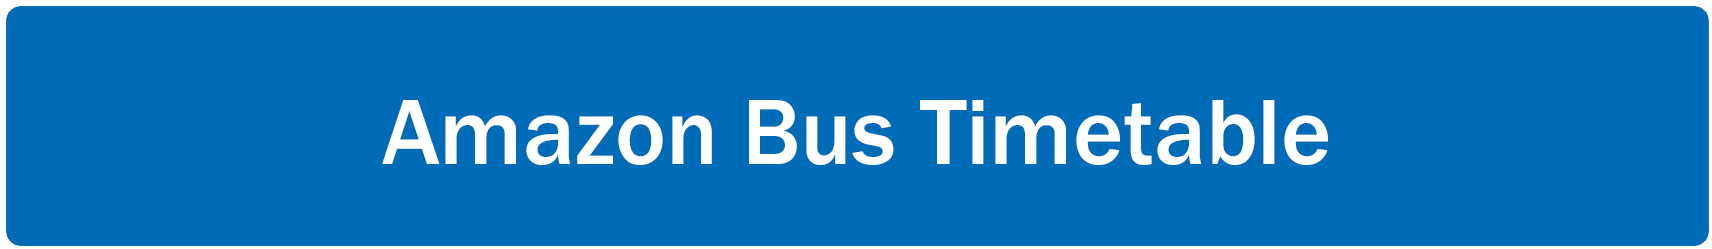 Amazon Bus Timetable